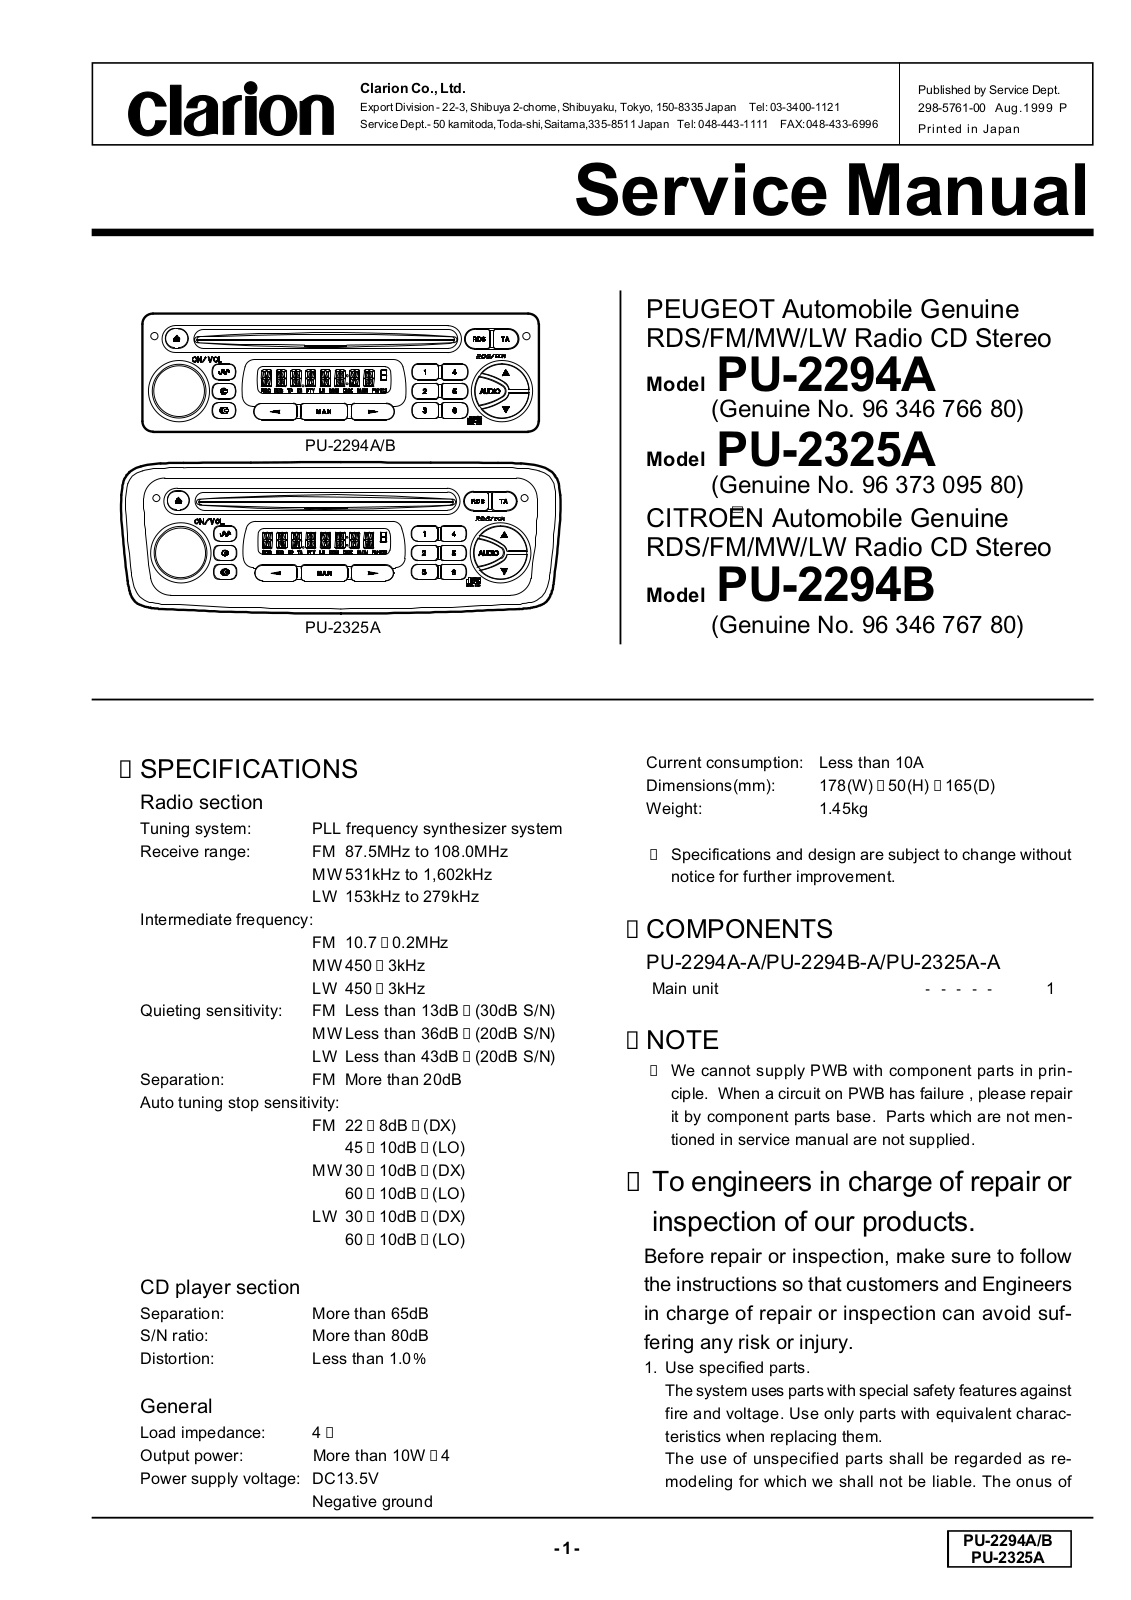 Clarion PU-2294A, PU-2325A Schematic